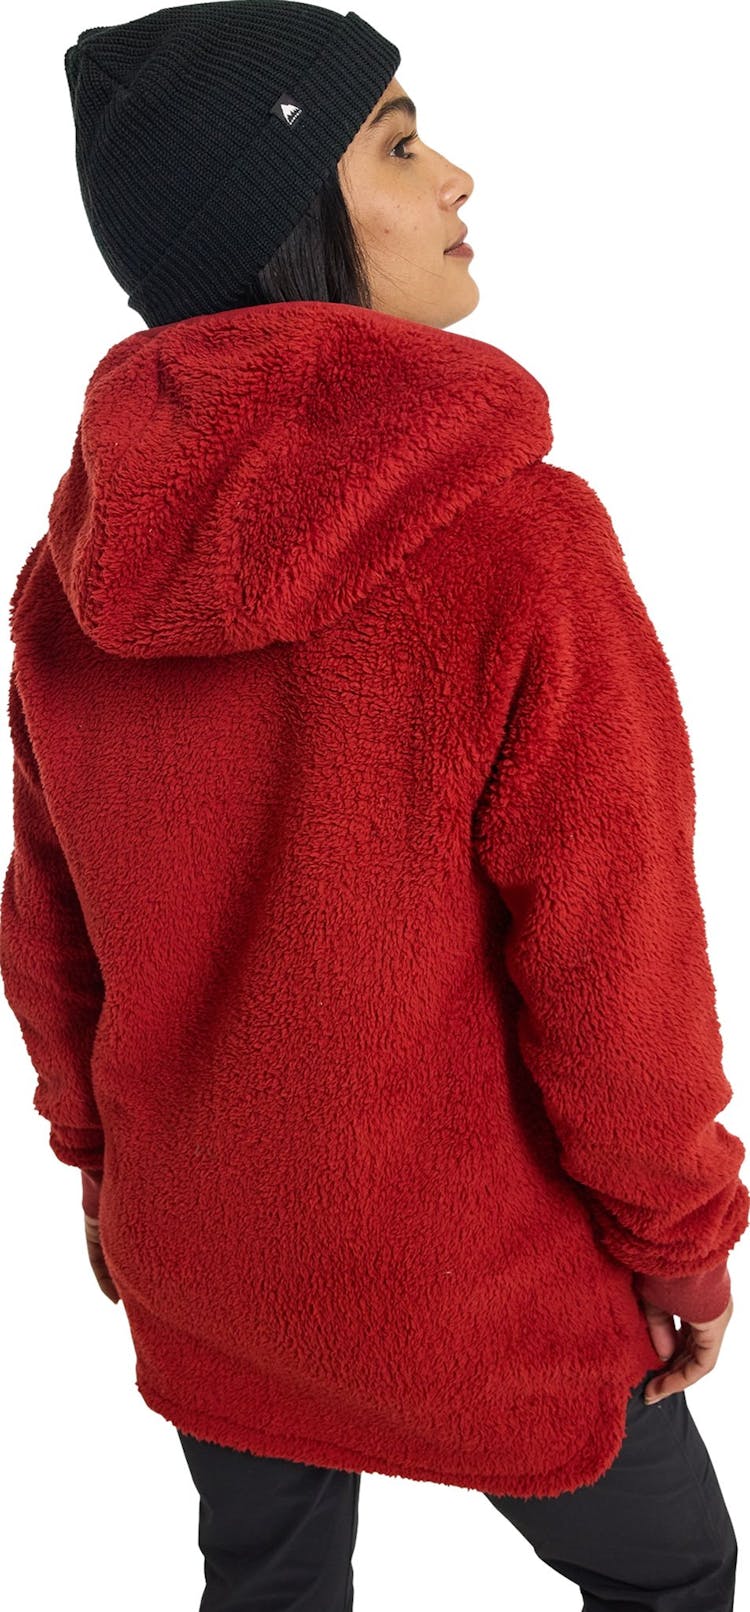 Numéro de l'image de la galerie de produits 3 pour le produit Manteau en molleton à glissière pleine longueur Minxy - Femme